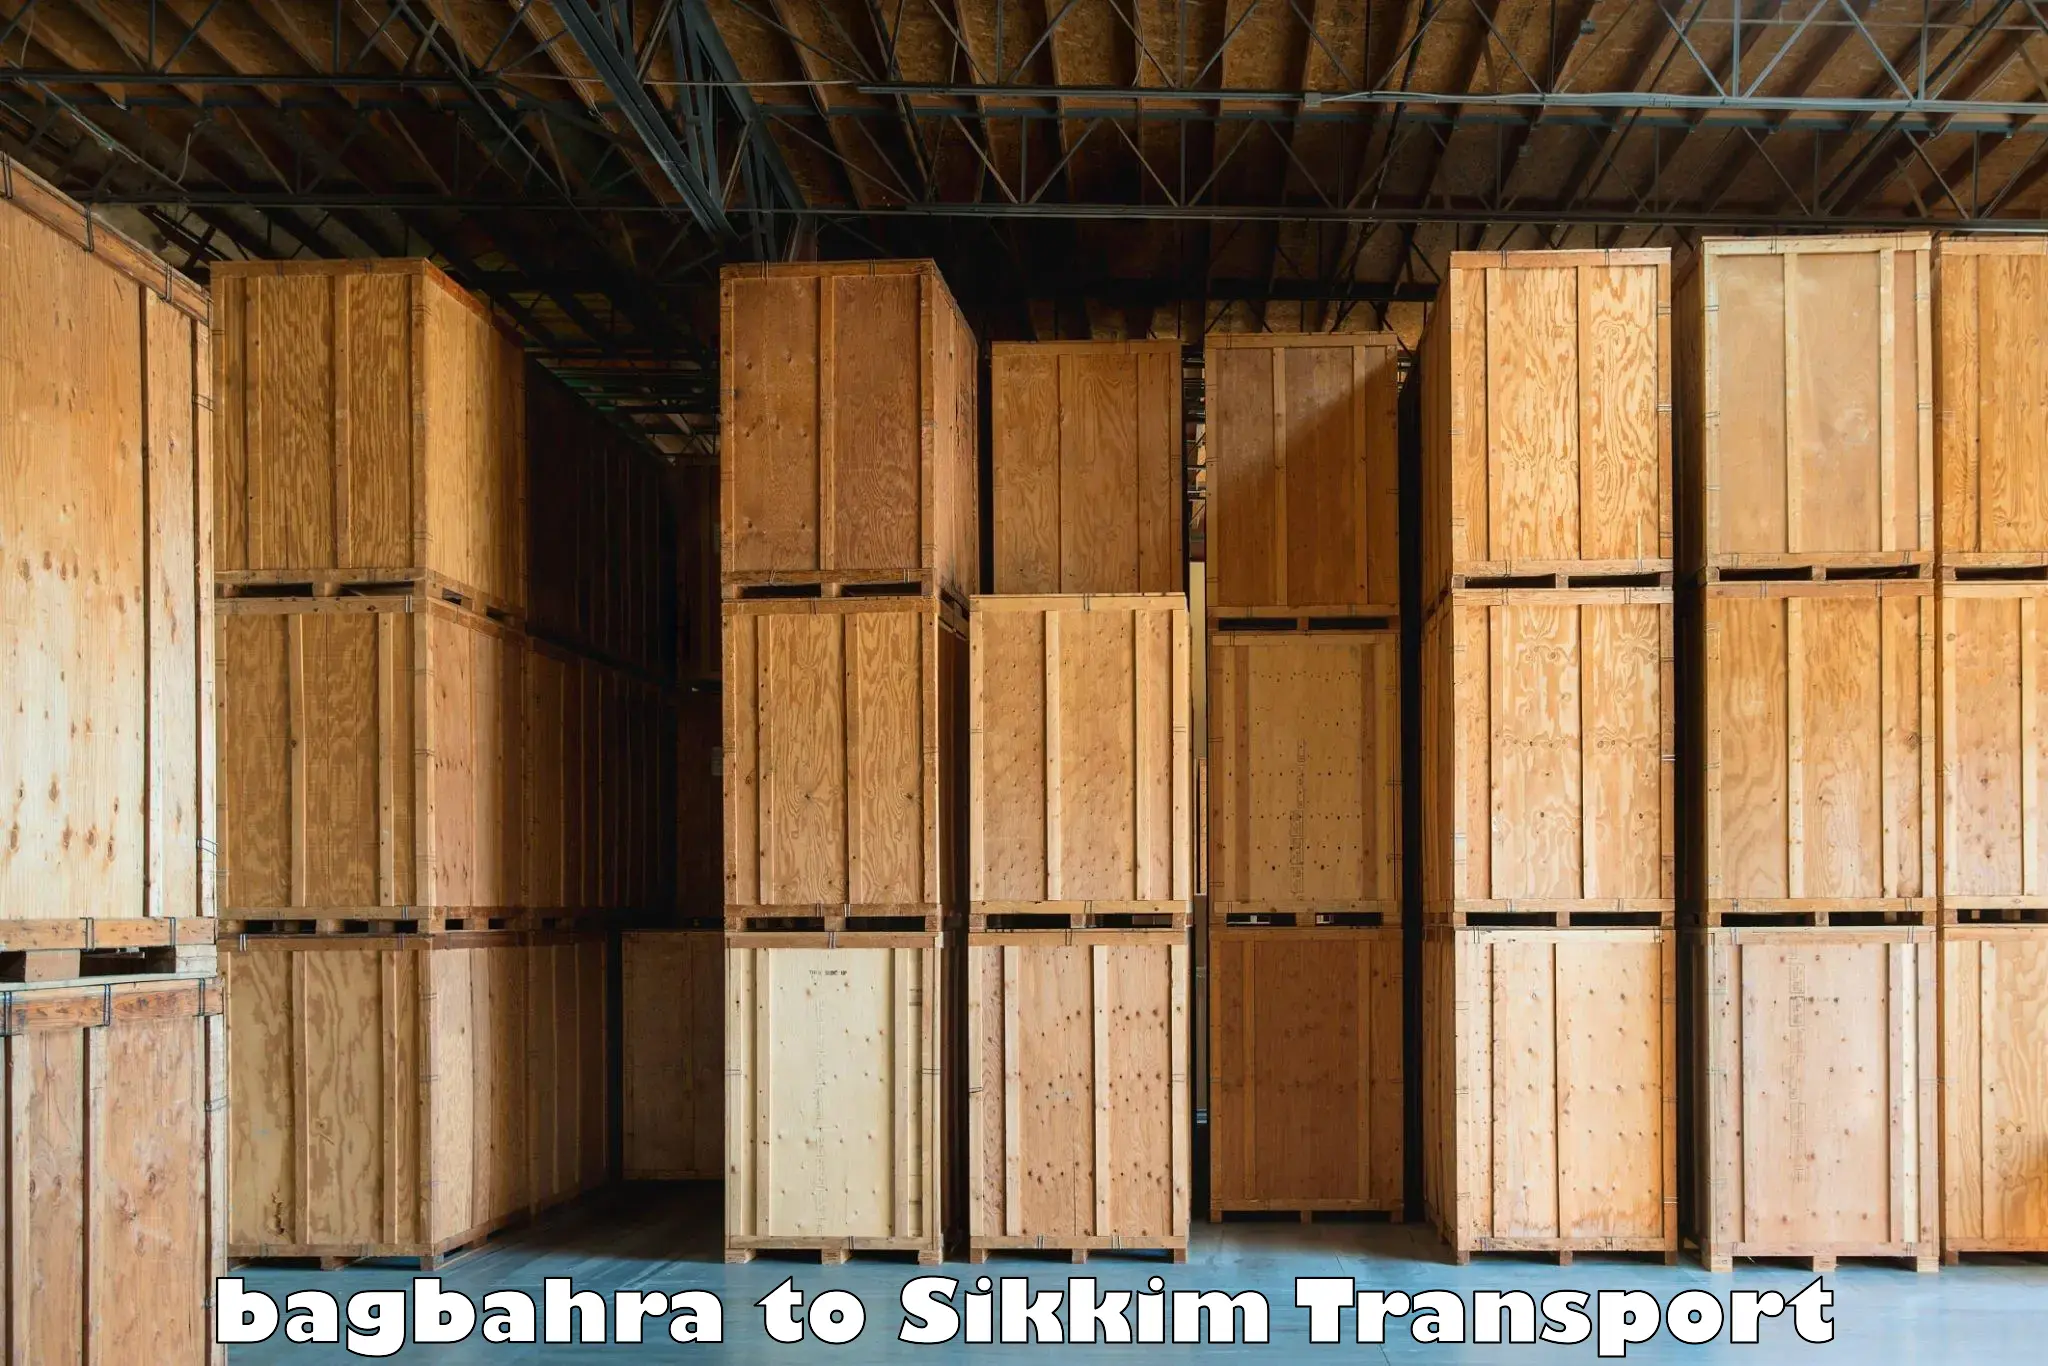 Intercity goods transport in bagbahra to Mangan